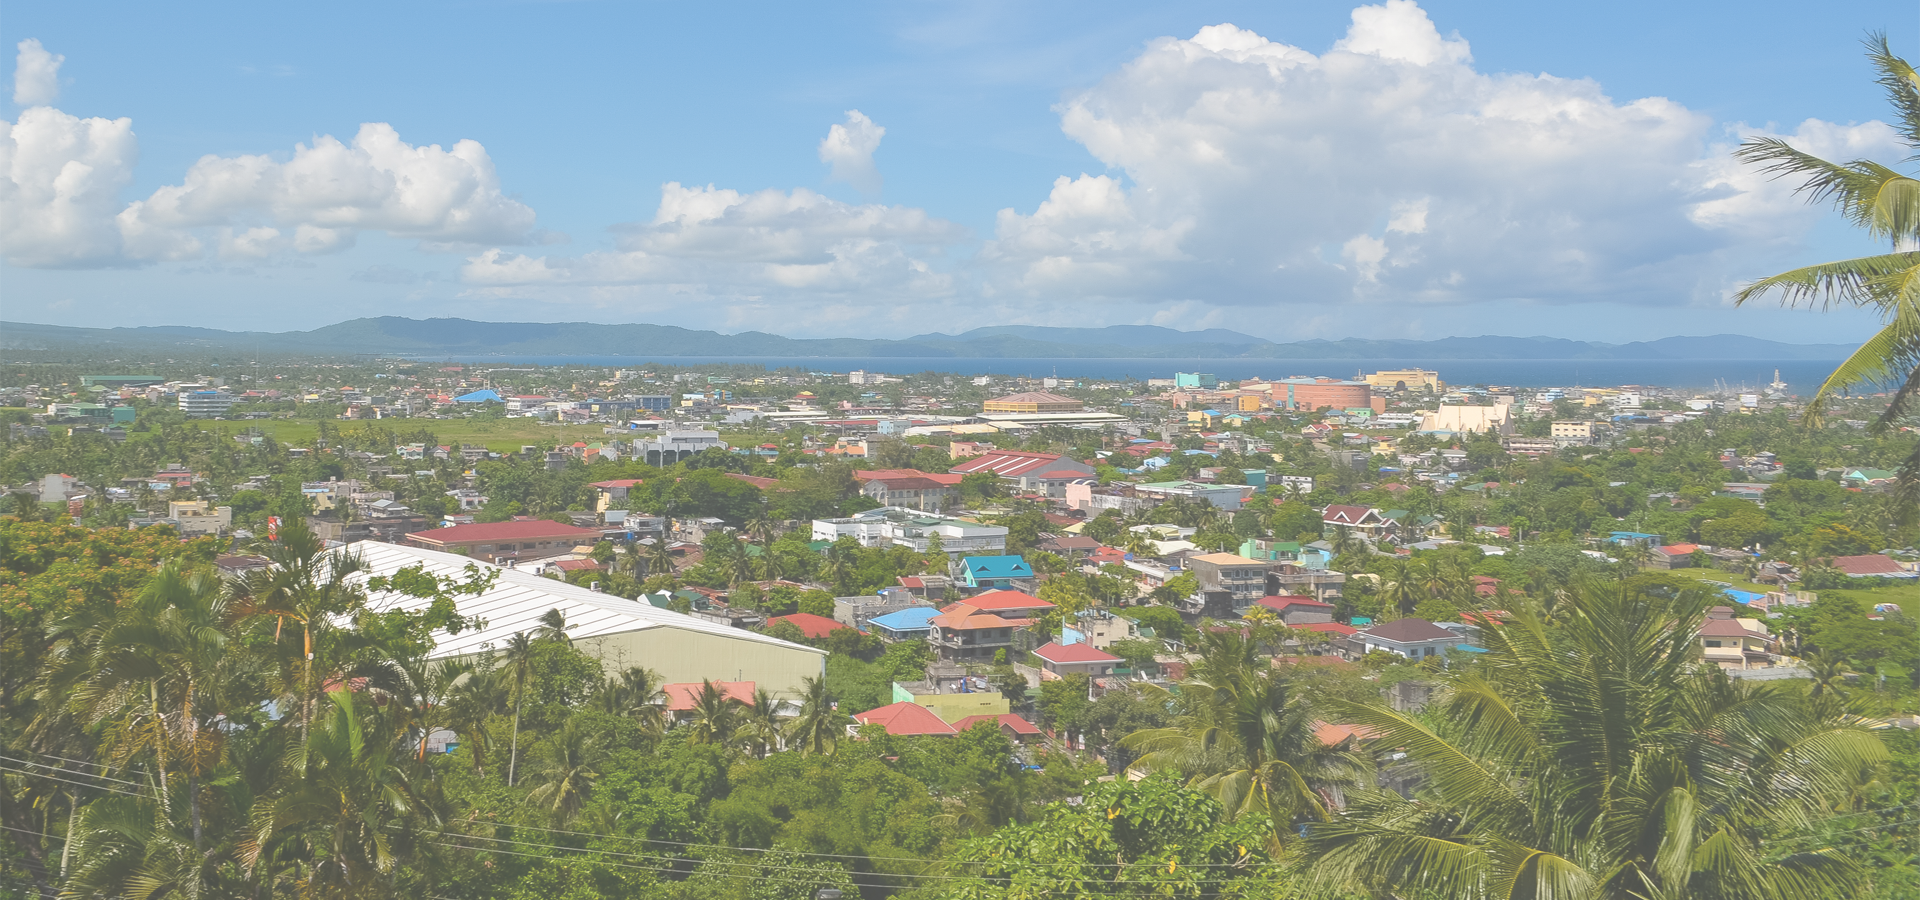 <b>Legazpi, Province of Albay, Bicol Region, Philippines</b>